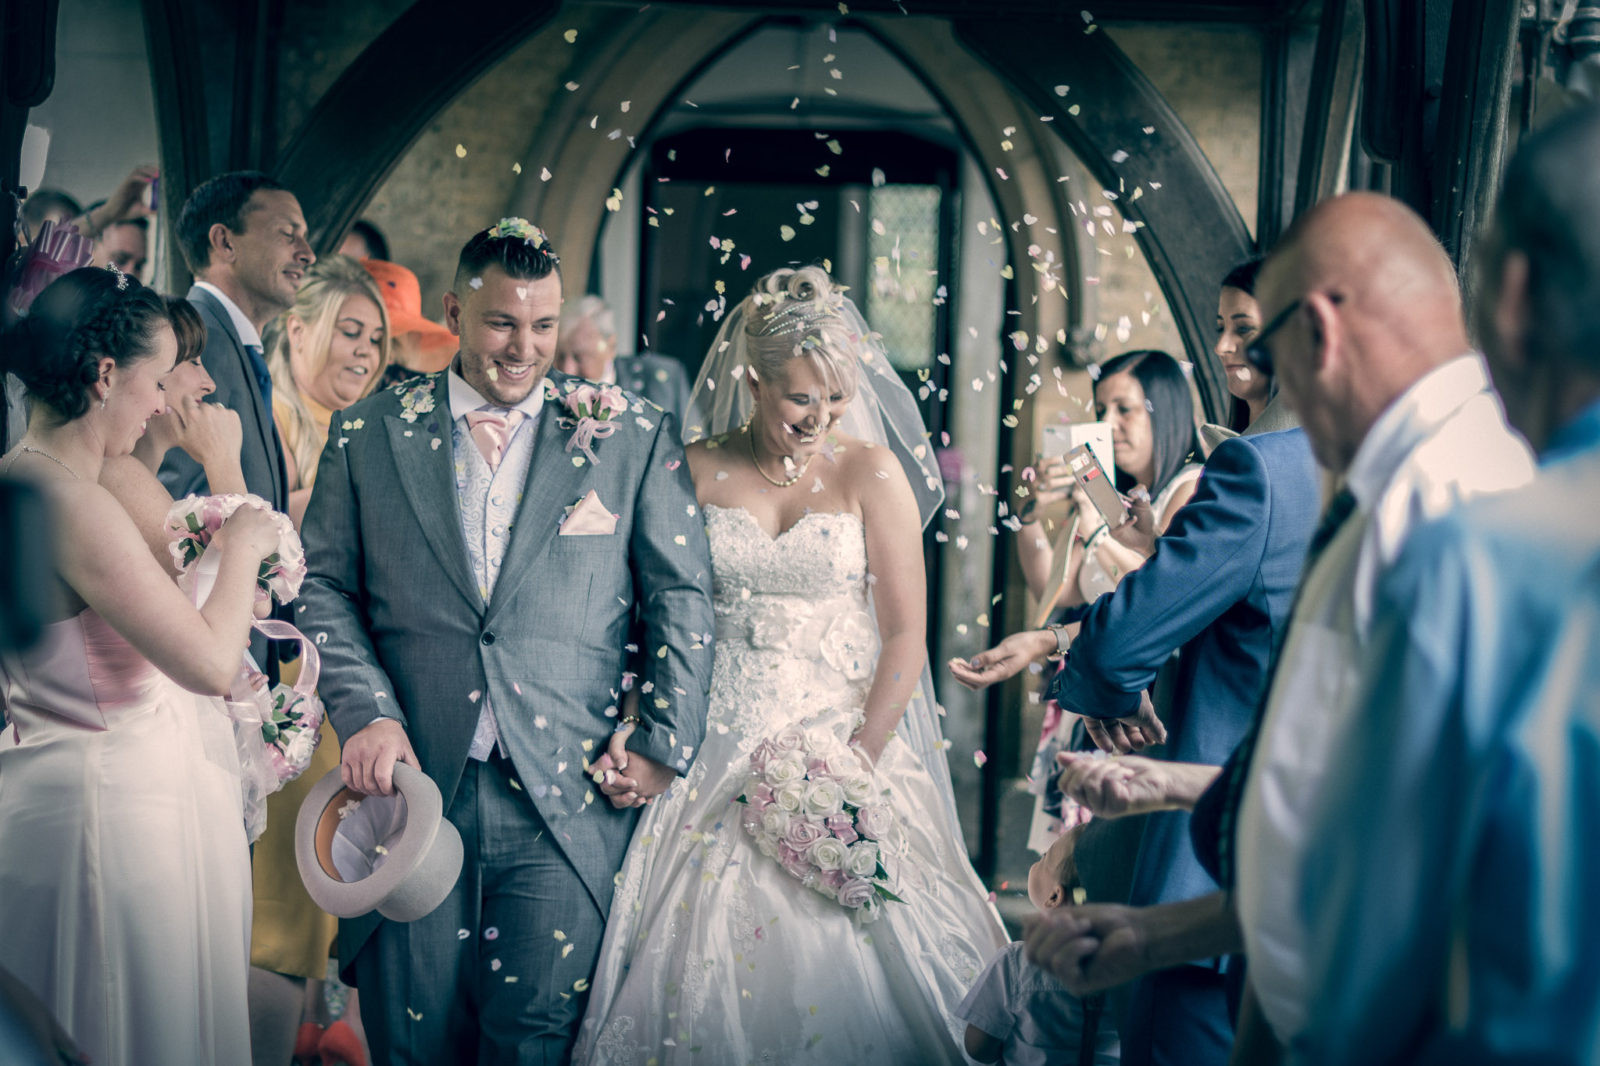 Essex wedding photography, best essex wedding photographer, wedding photographer essex, Zac Photography